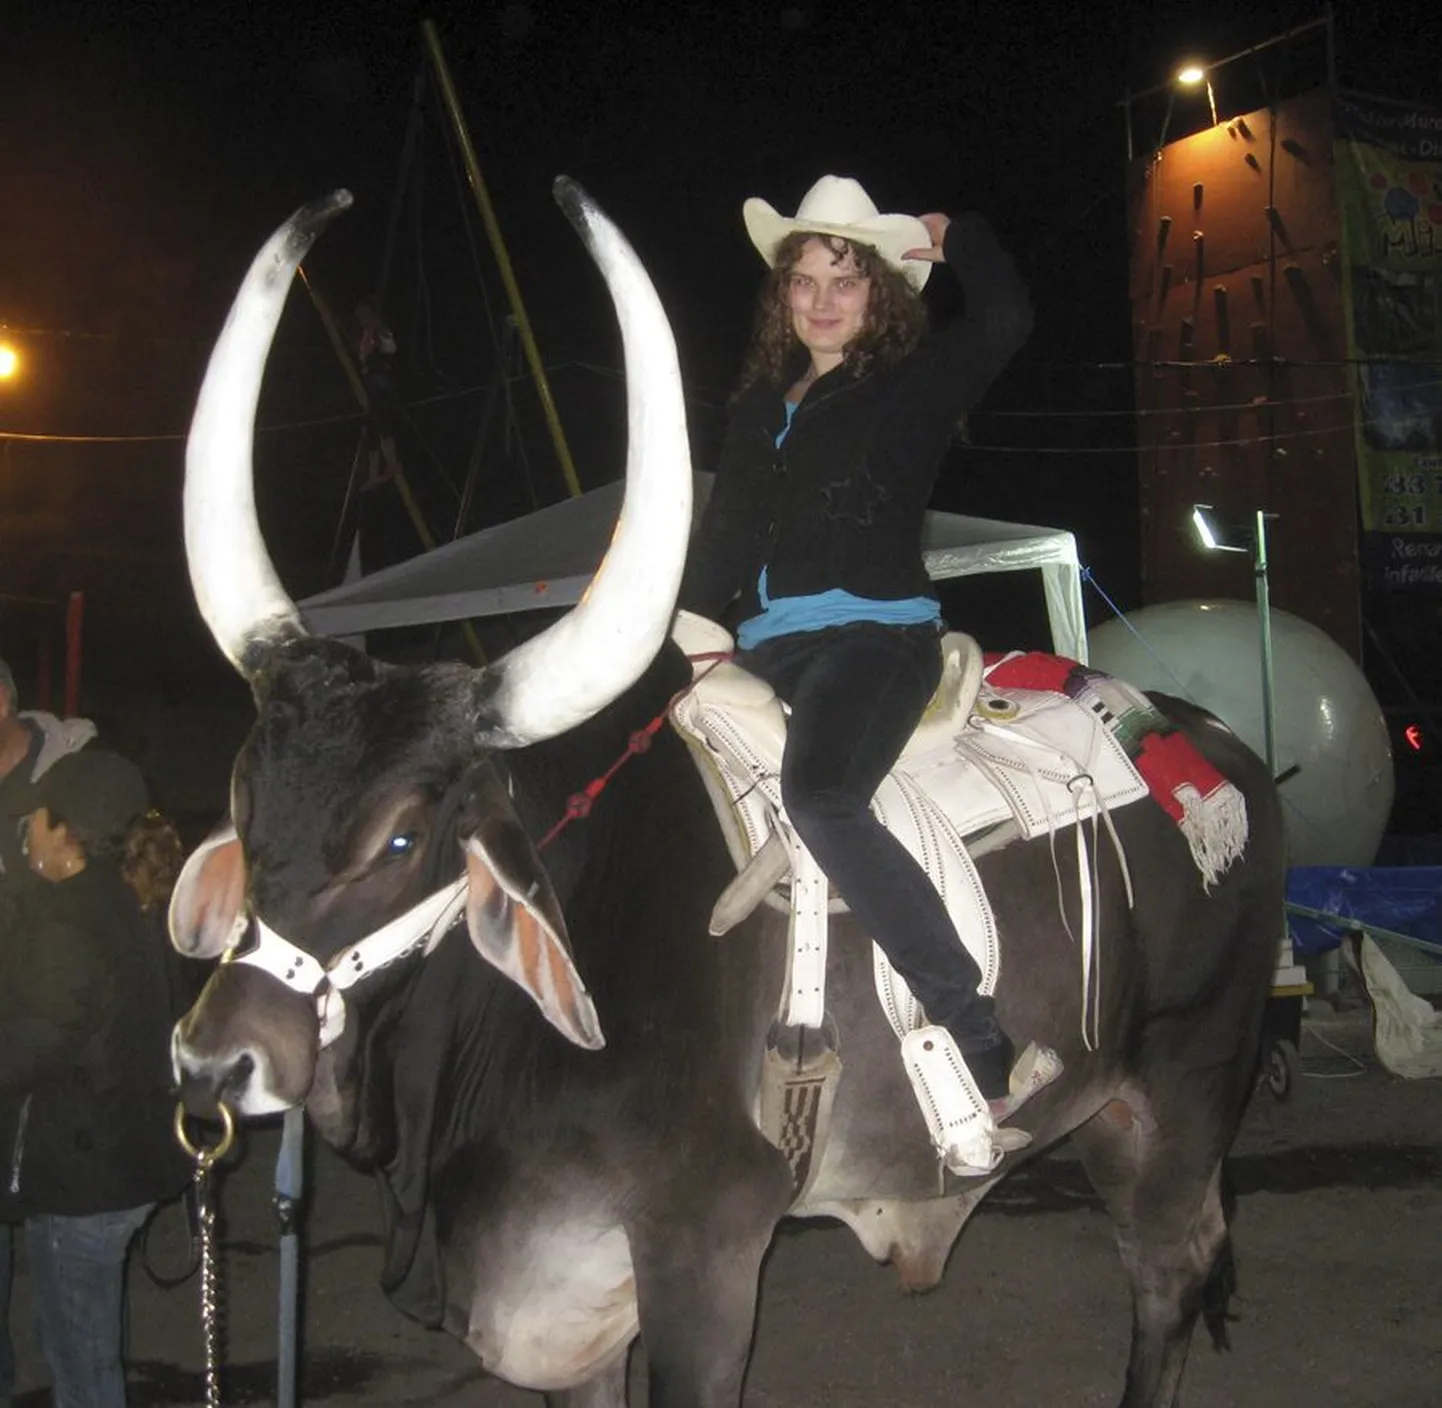 Eestis pole härgi tööloomadenagi eriti kasutatud, saati siis ratsutamiseks. Mehhikos sattus Keily Tammaru aga juba esimestel nädalatel härja selga. Stiilne kaabu kuulus muidugi sellise ettevõtmise juurde.